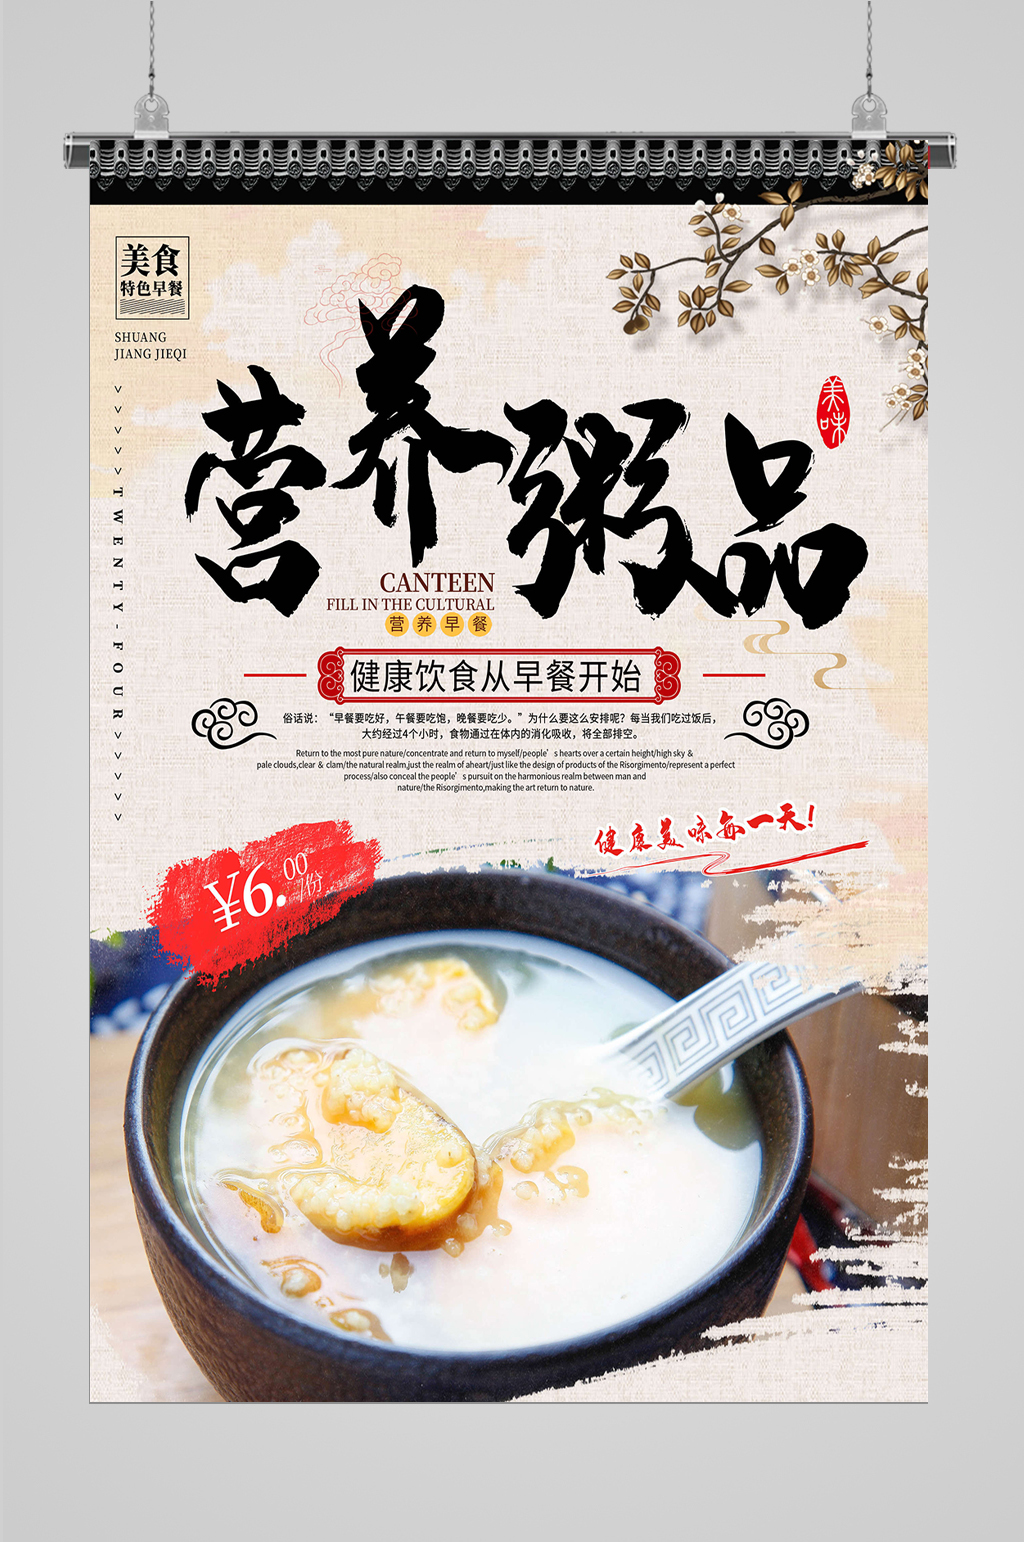 粥品传统美食素材免费下载,本作品是由dd56413上传的原创平面广告素材